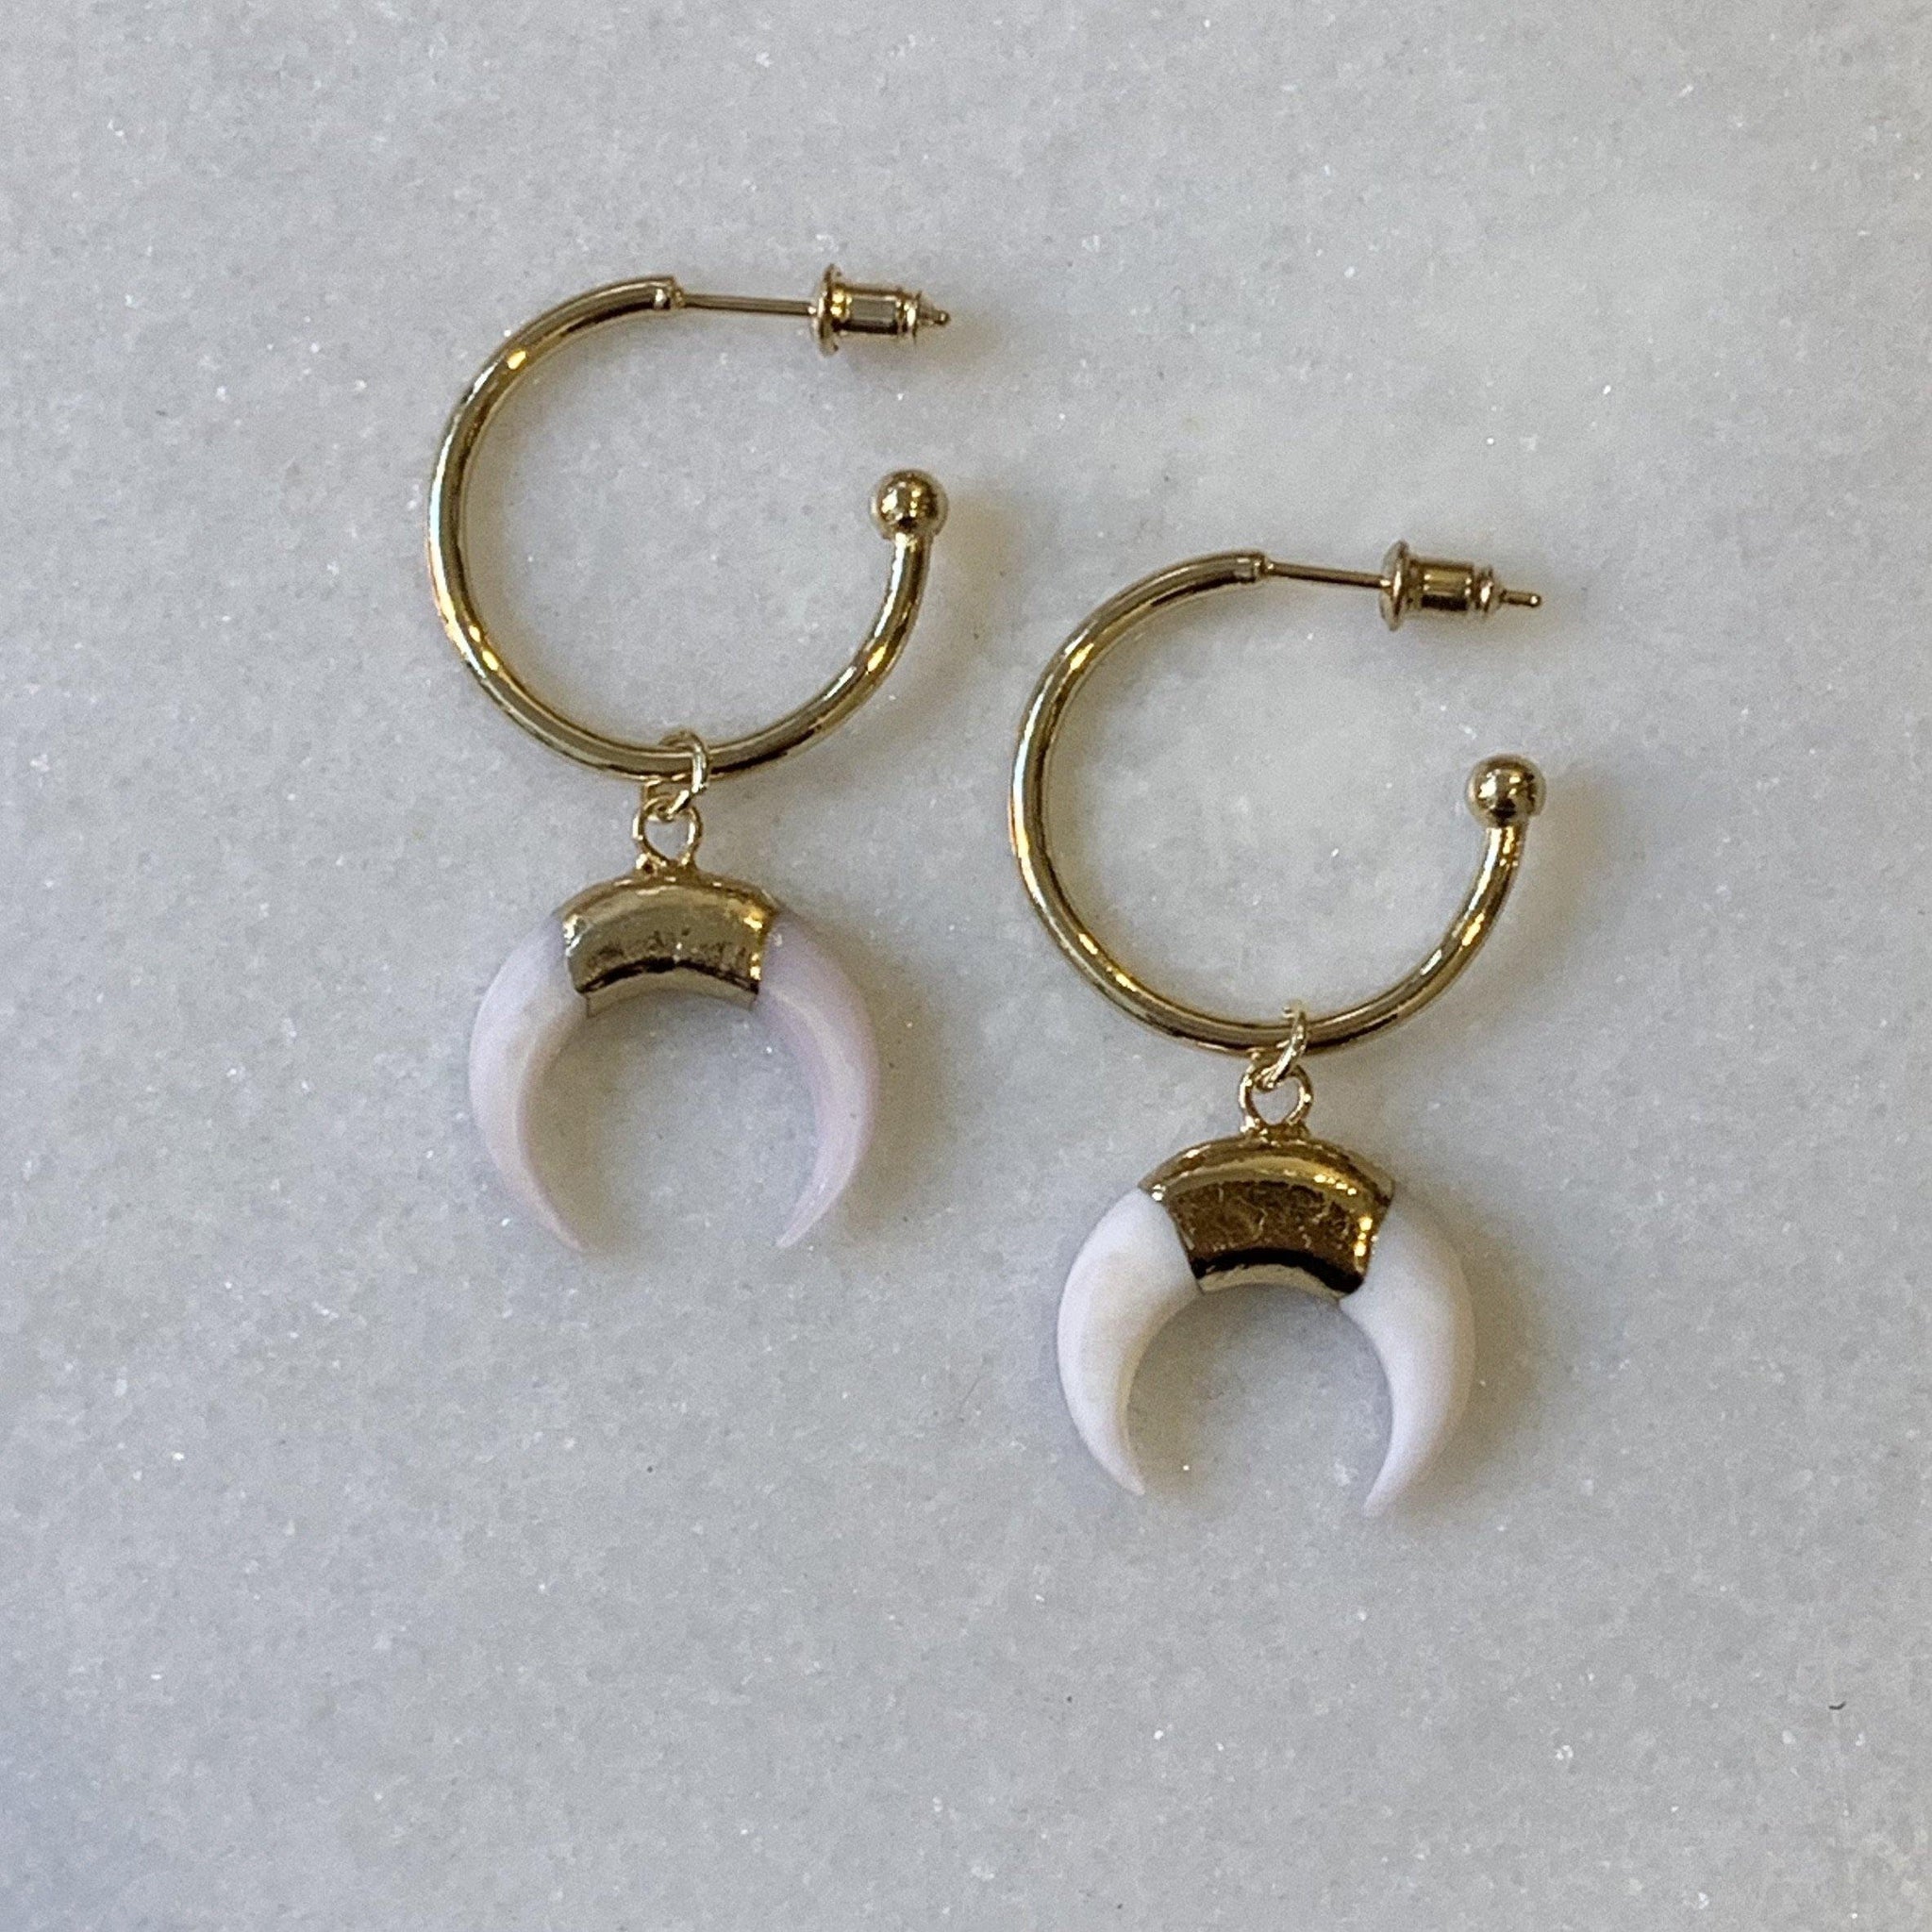 Horn Shell Earrings - Revival Phl